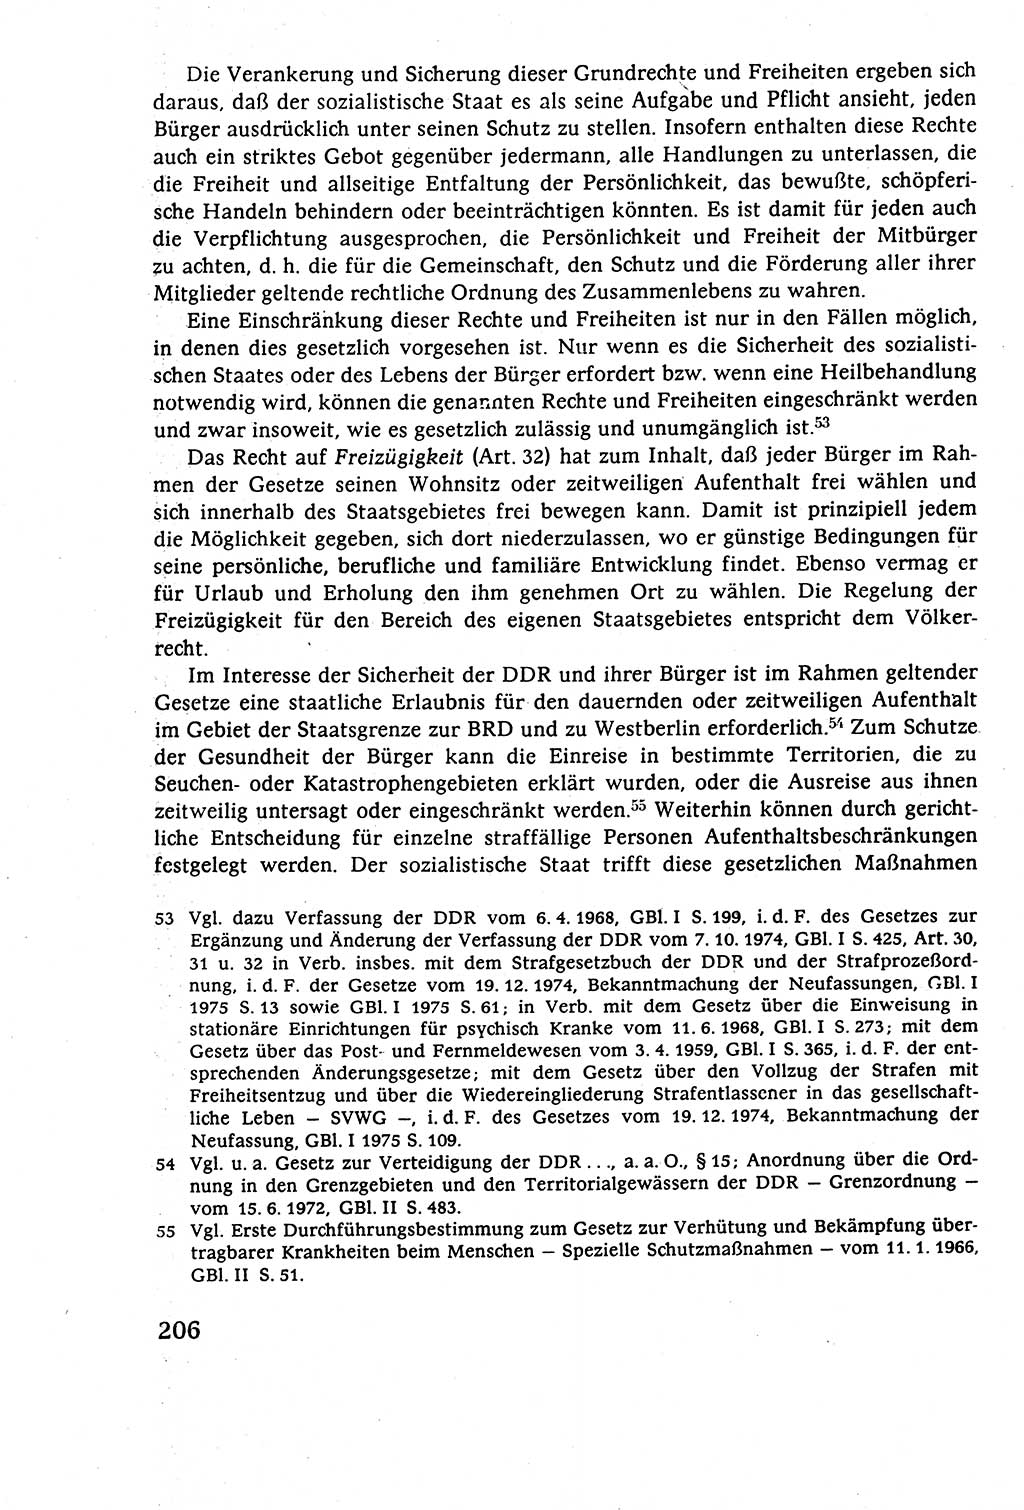 Staatsrecht der DDR (Deutsche Demokratische Republik), Lehrbuch 1977, Seite 206 (St.-R. DDR Lb. 1977, S. 206)